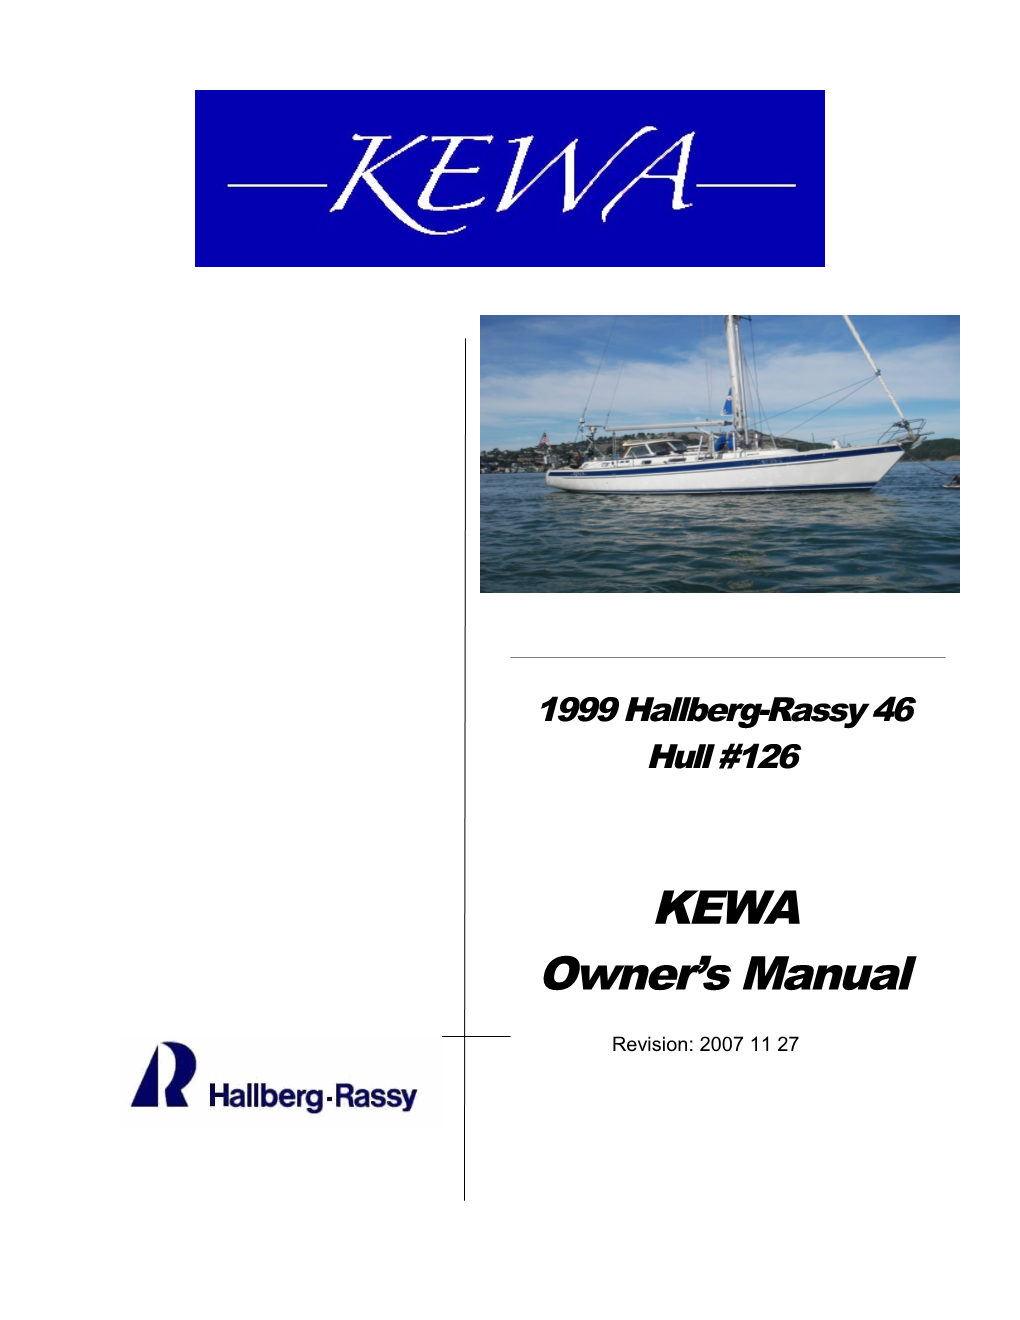 KEWA's Owner's Manual s1